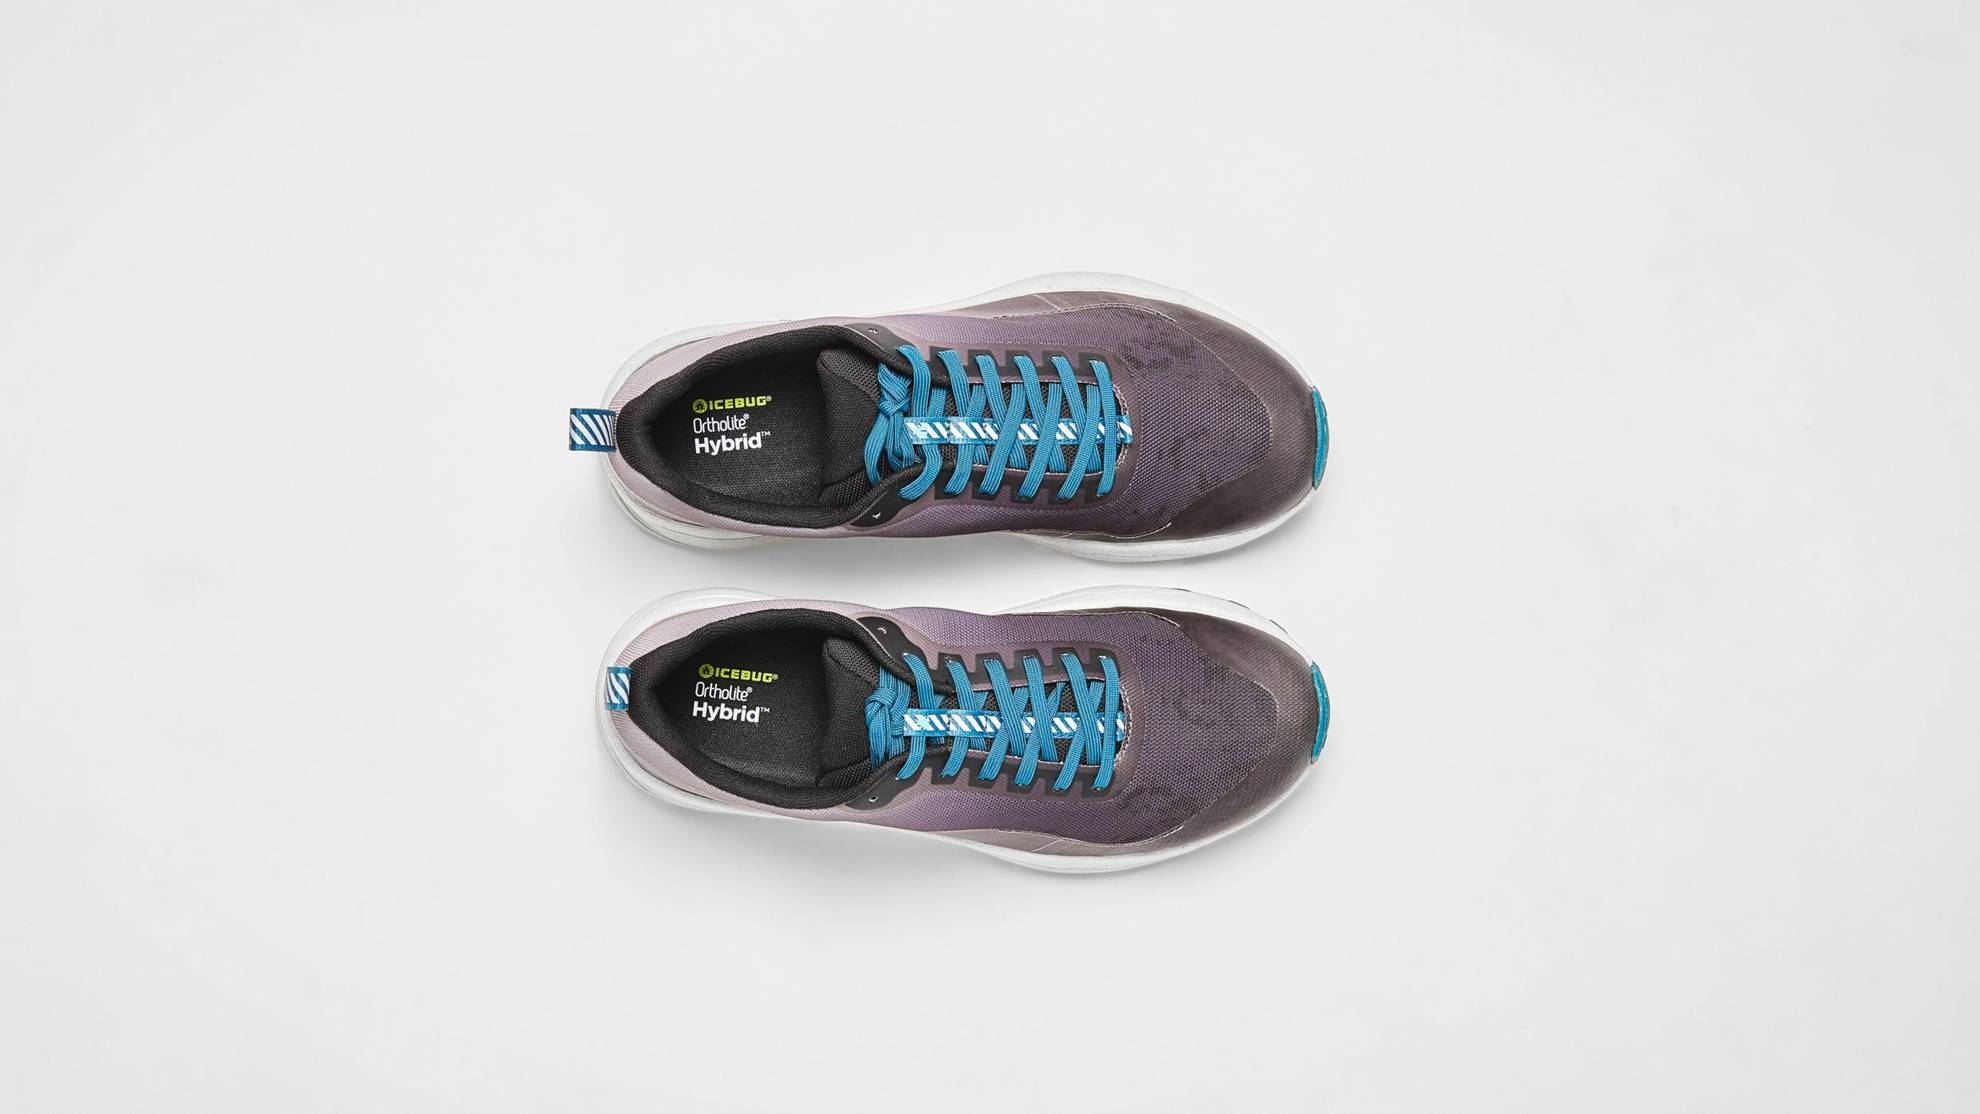 Des chaussures grises à lacets bleus sont posés sur une surface blanche.